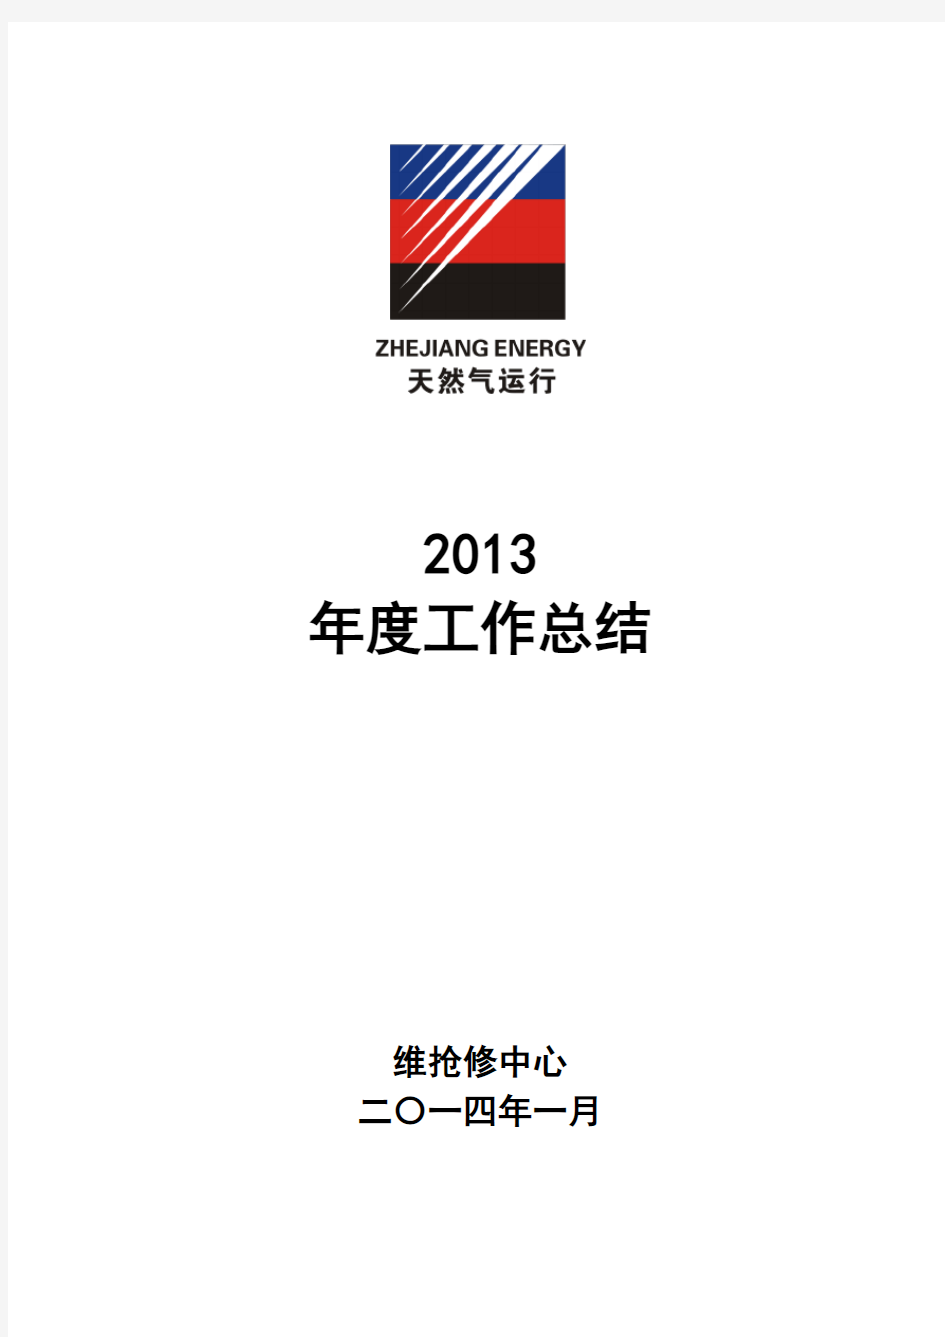 2013年度维抢修工作总结(2)